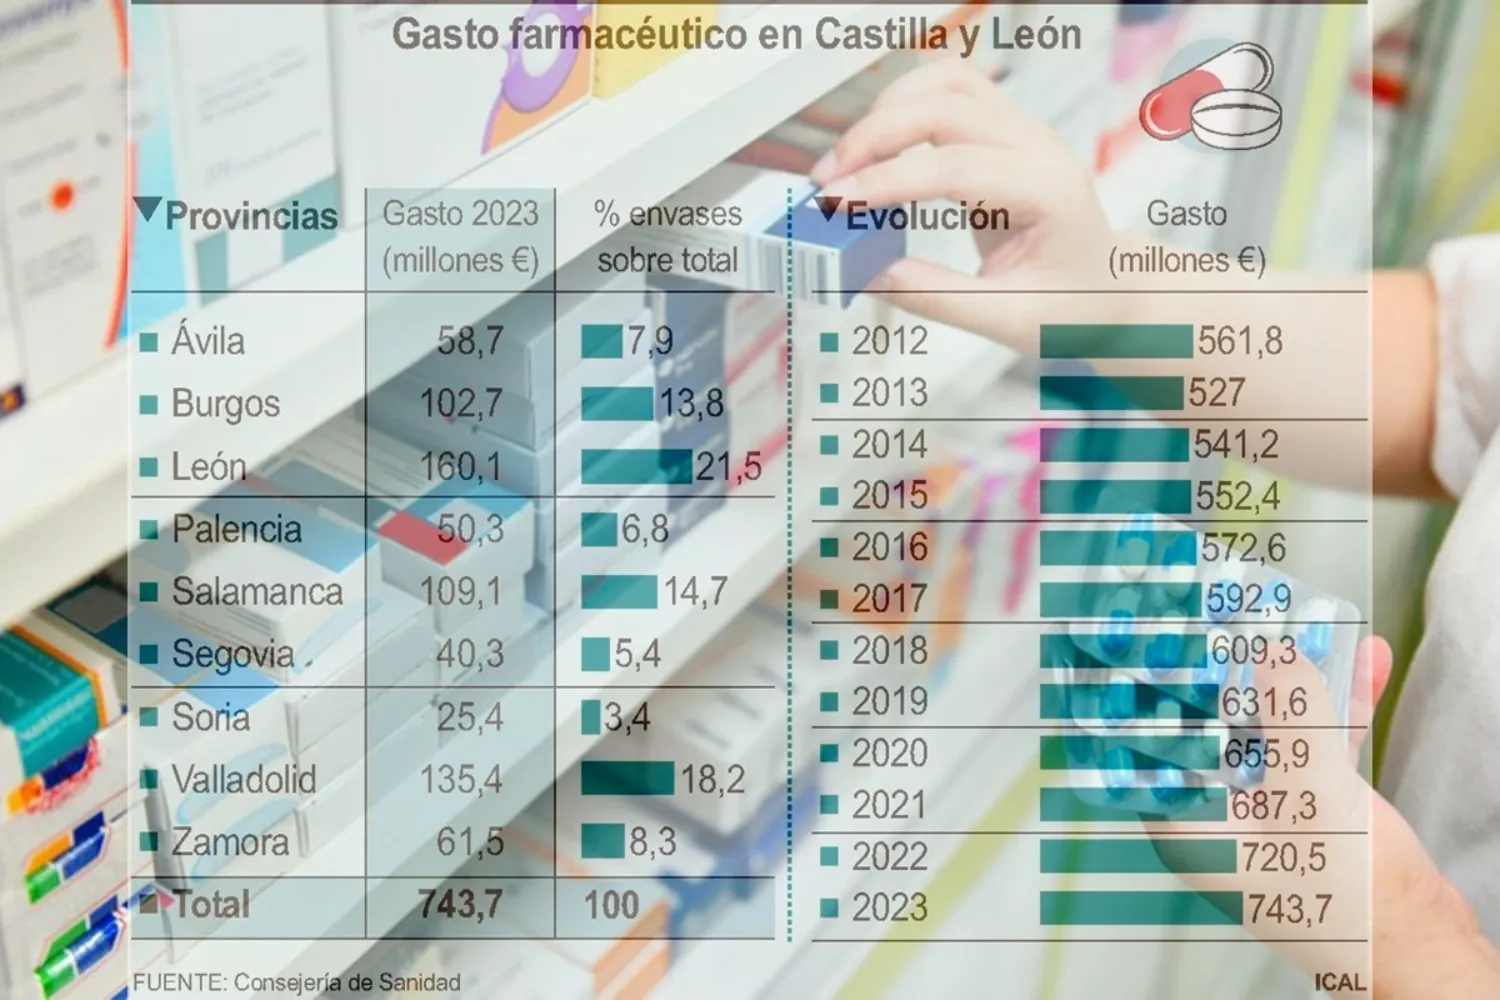 León es la provincia con el mayor gasto farmacéutico en Castilla y León, con 160 millones de euros en 2023, lo que equivale a 30,2 euros por persona